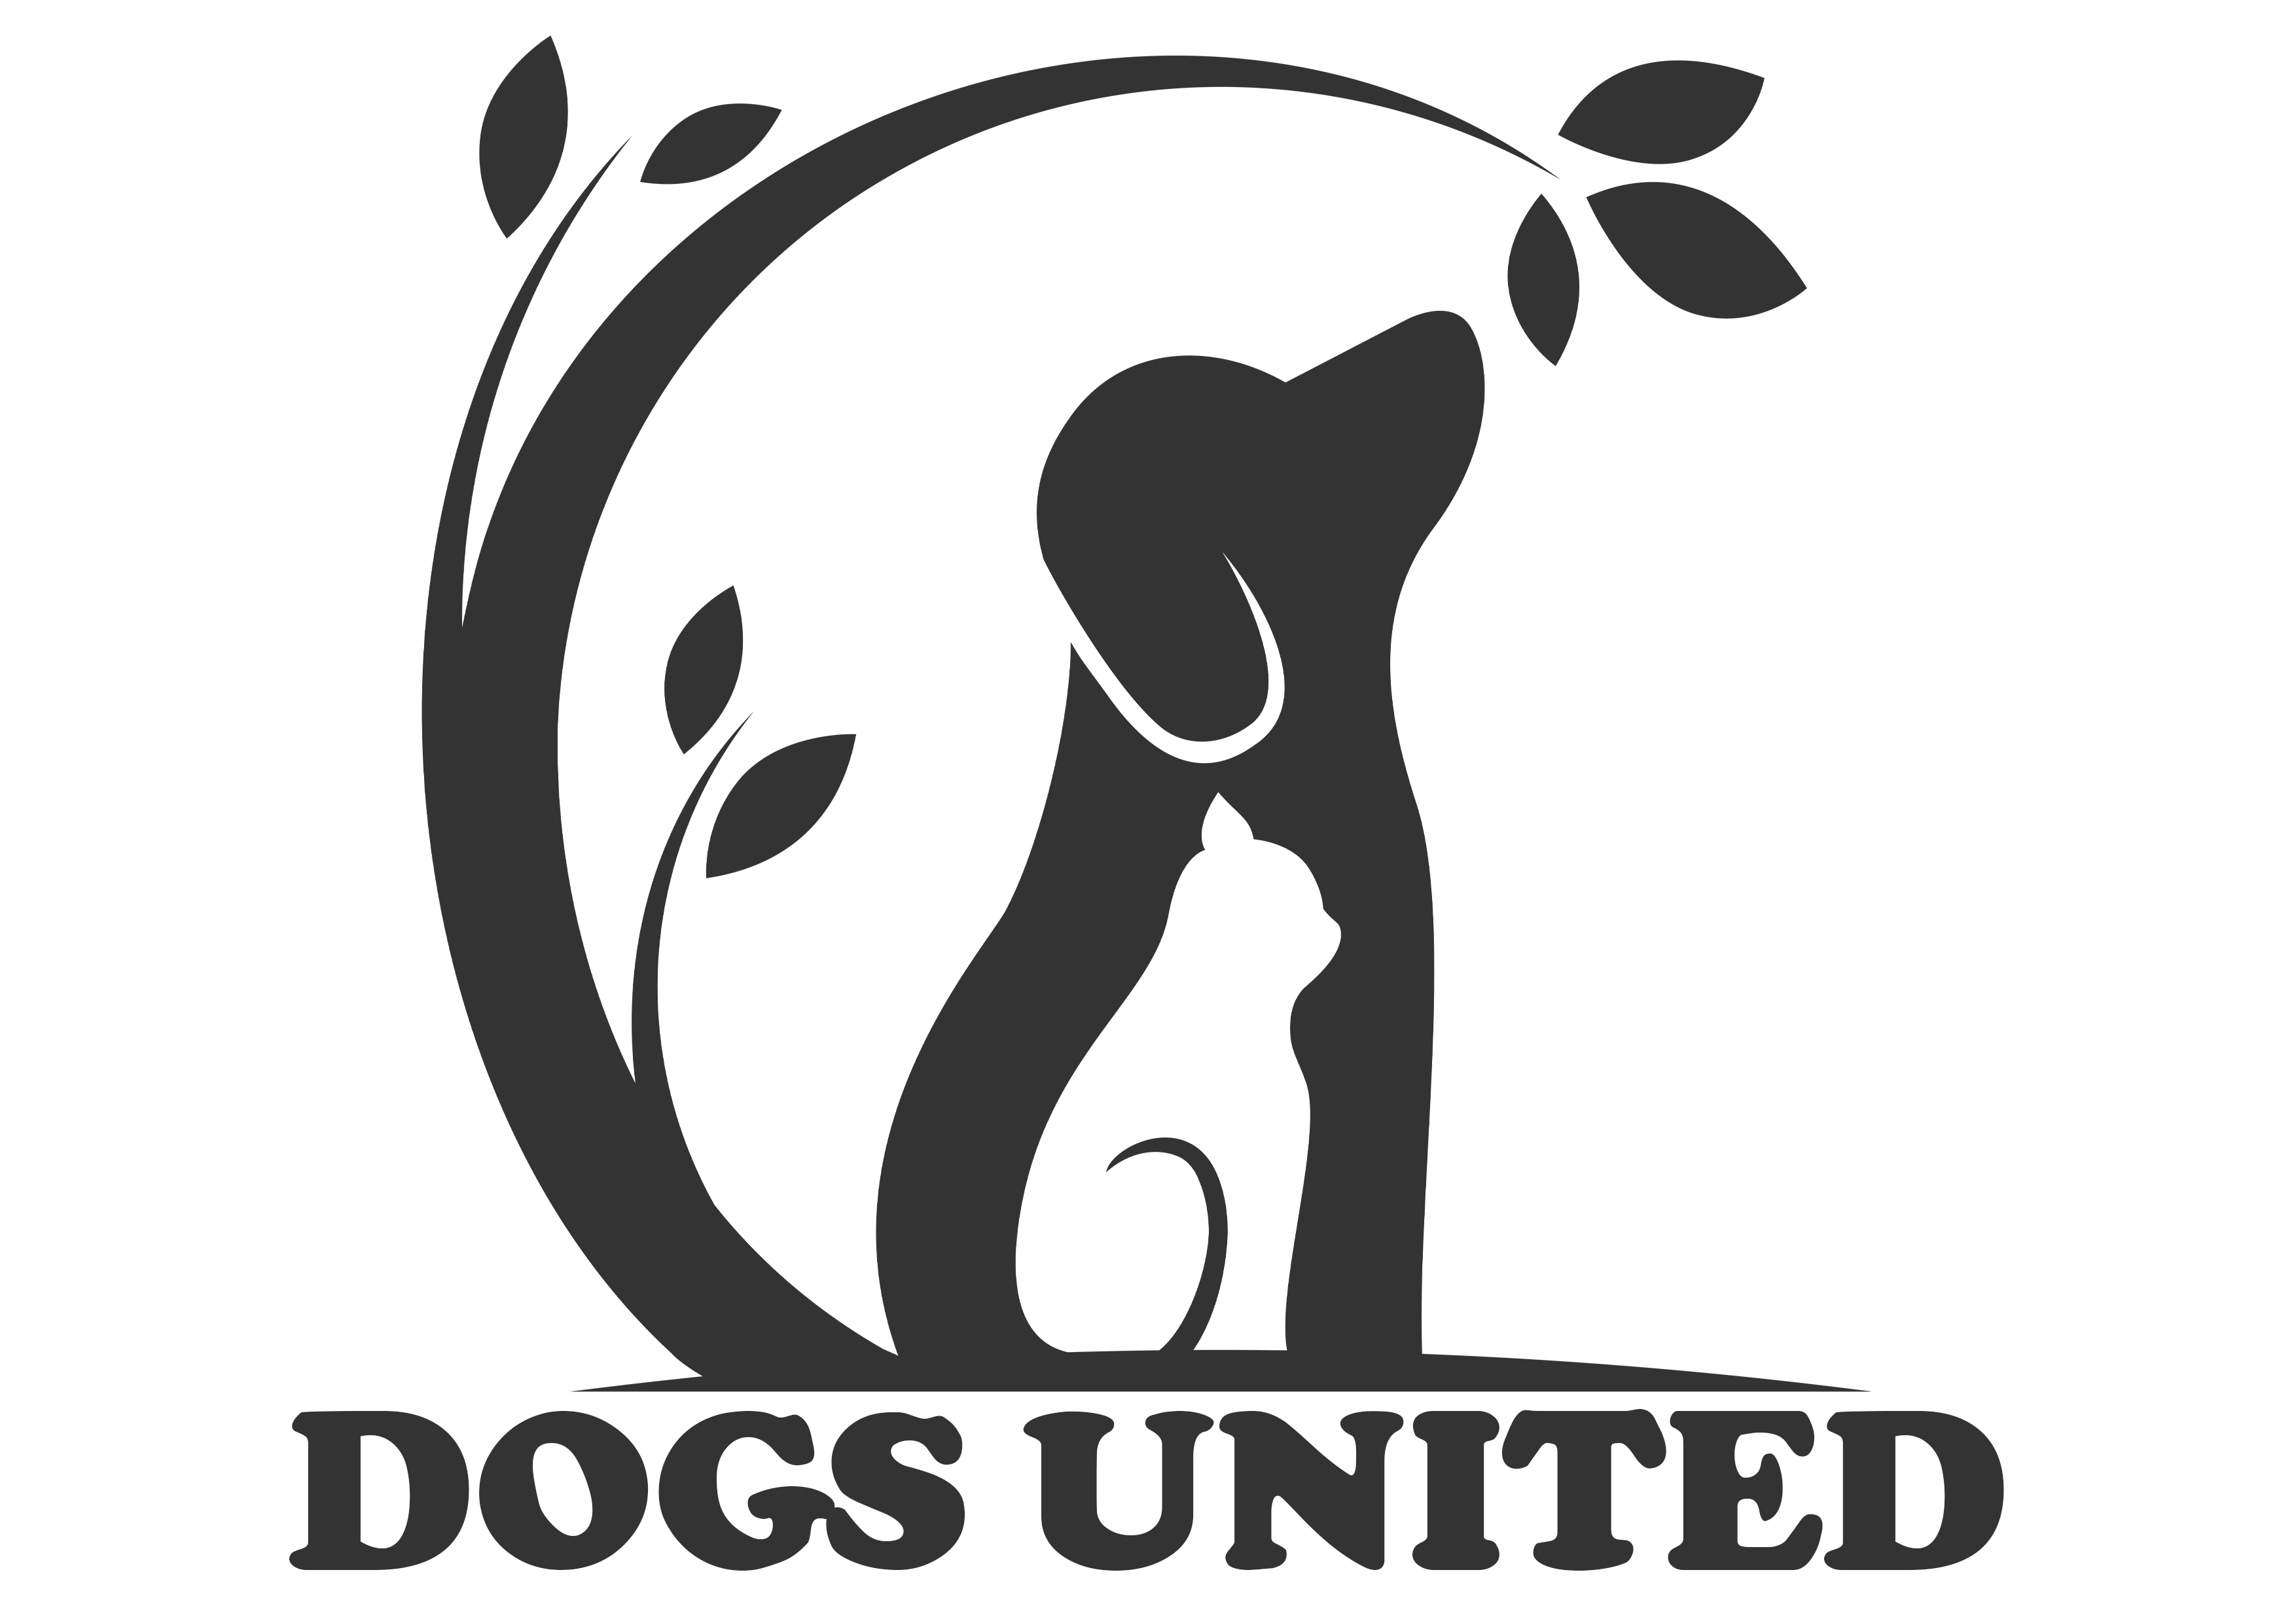 Dogs United logo